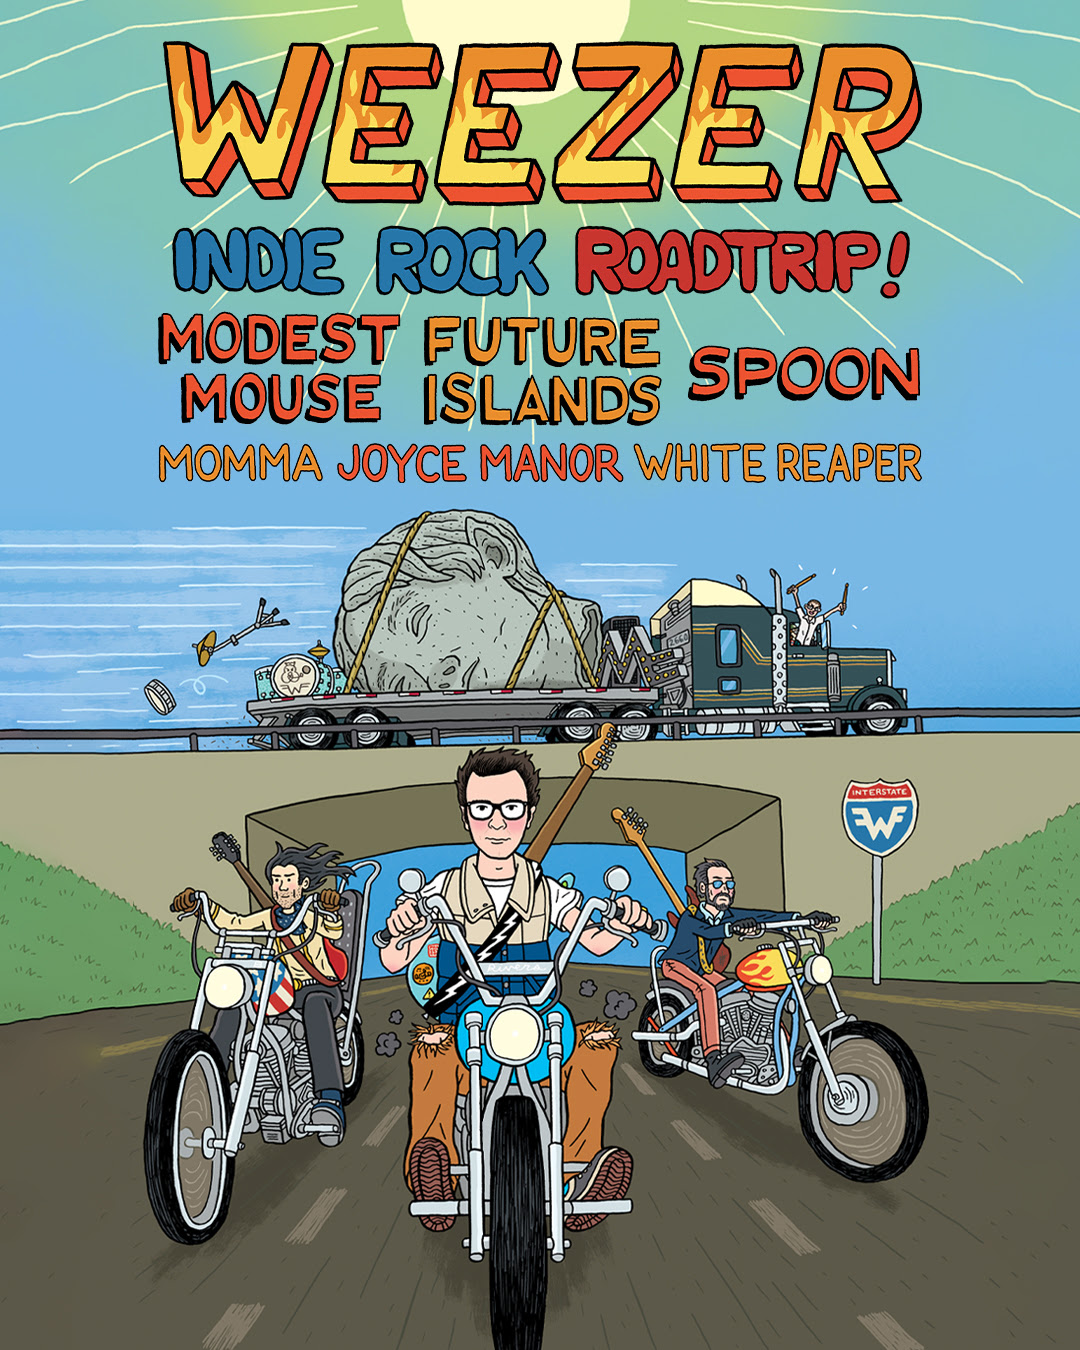 weezer indie road trip 2023